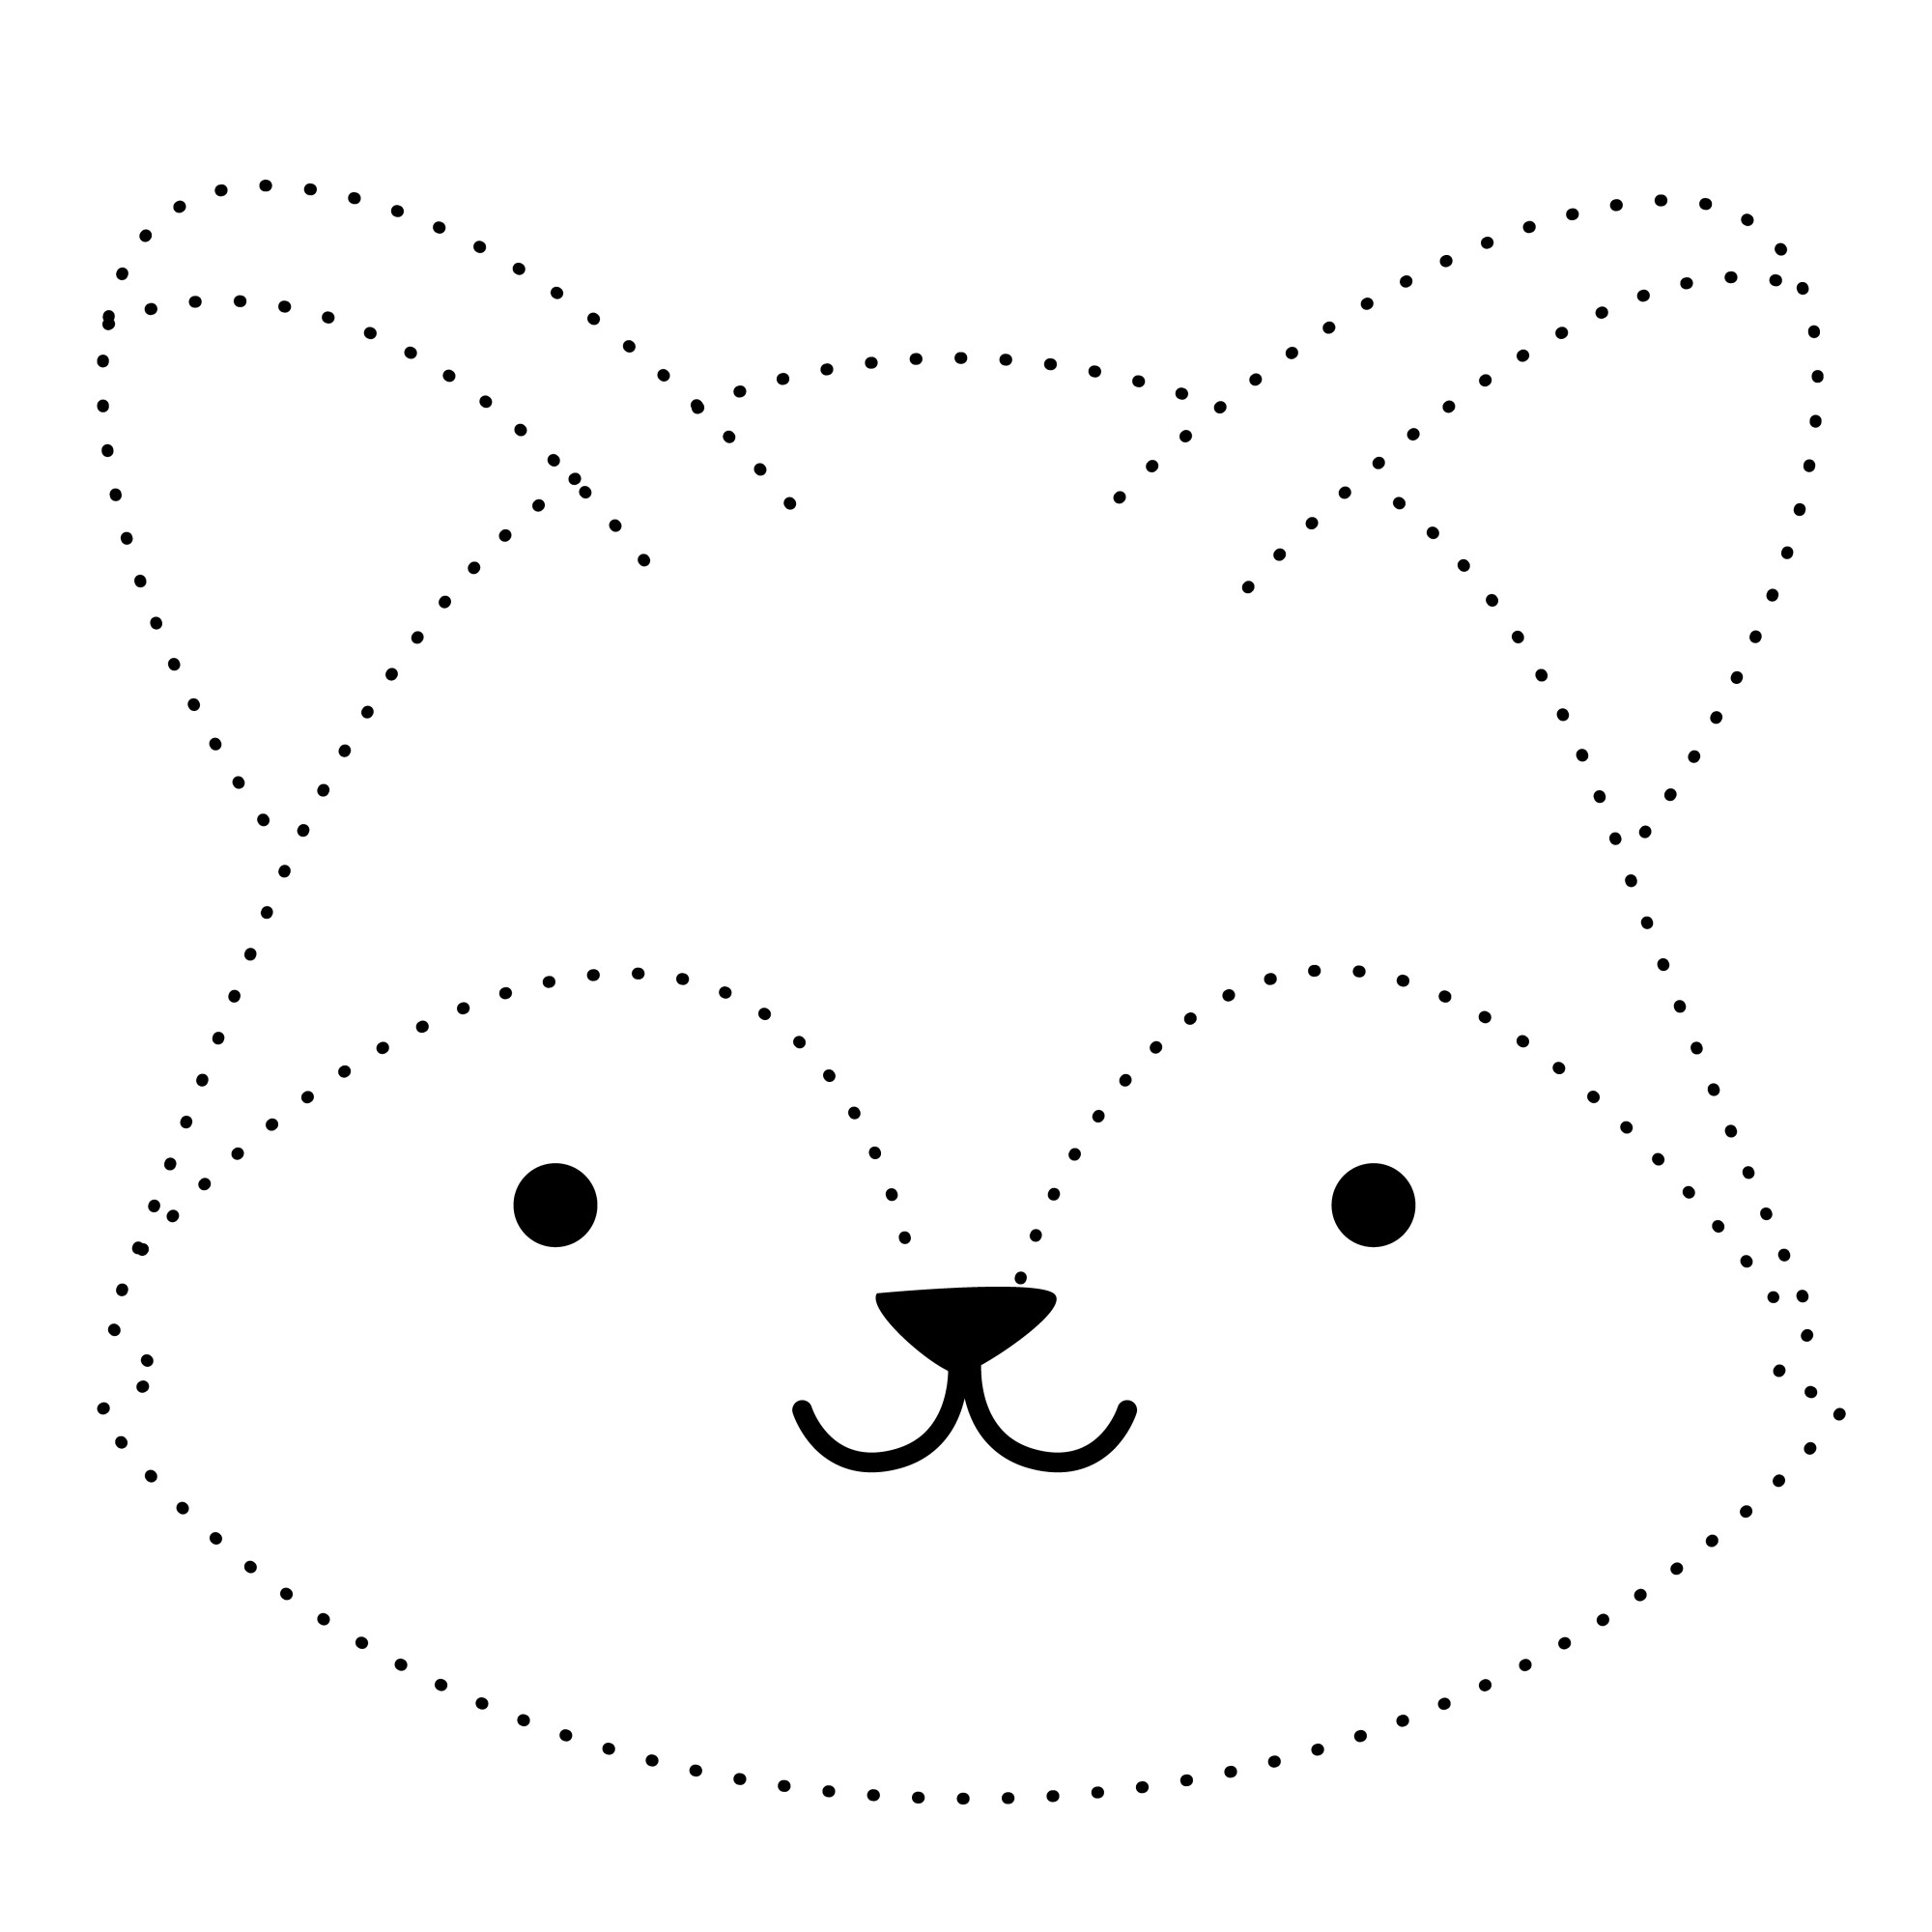 Раскраска для детей: мордочка лисицы по точкам